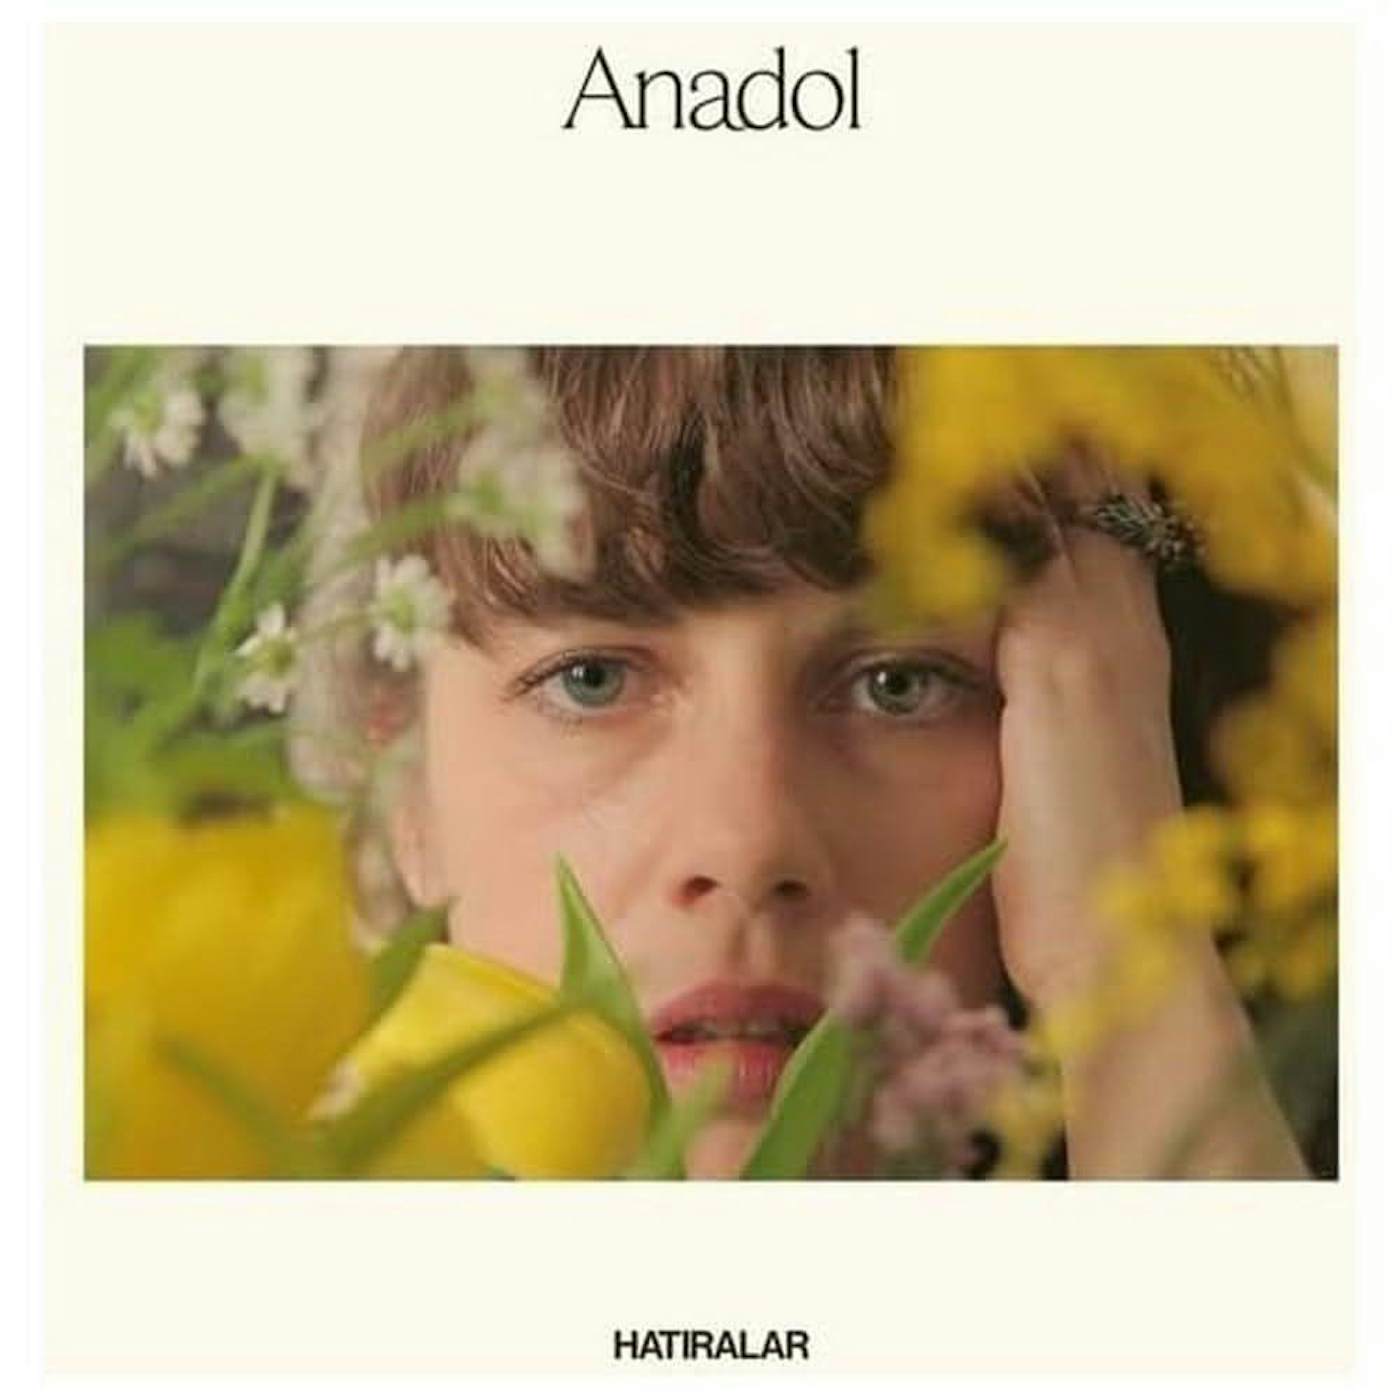 Anadol Hatiralar Vinyl Record